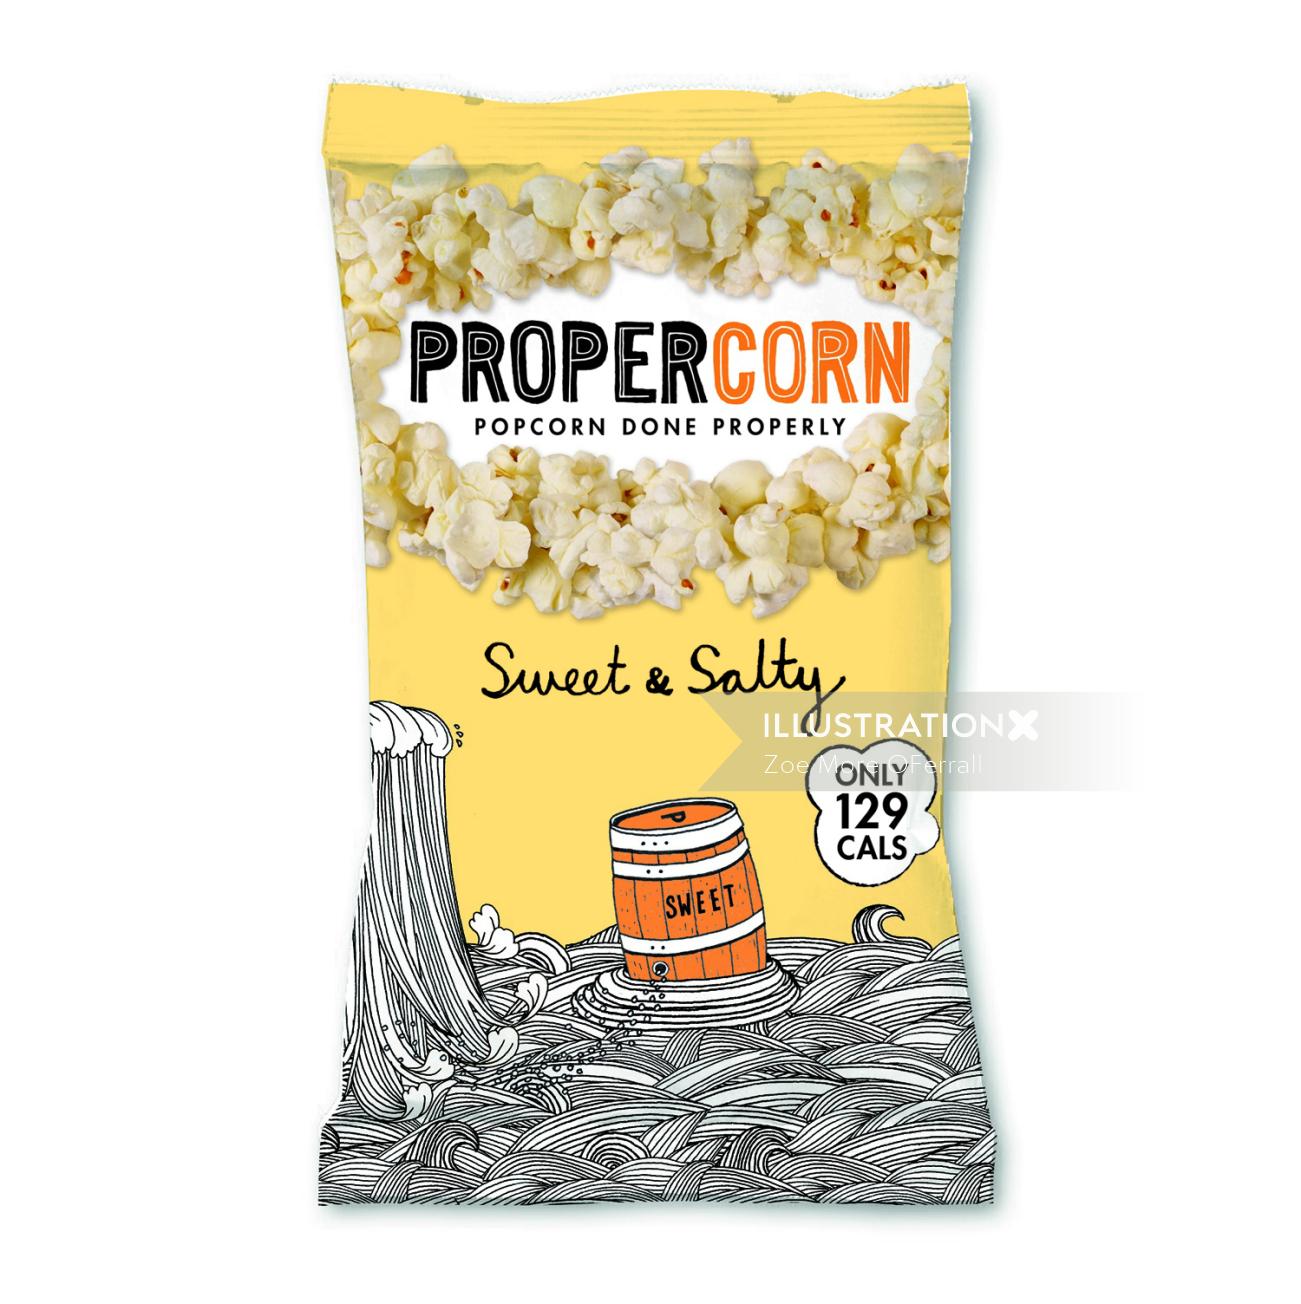 Packaging of Proper Corn Sweet & Salty